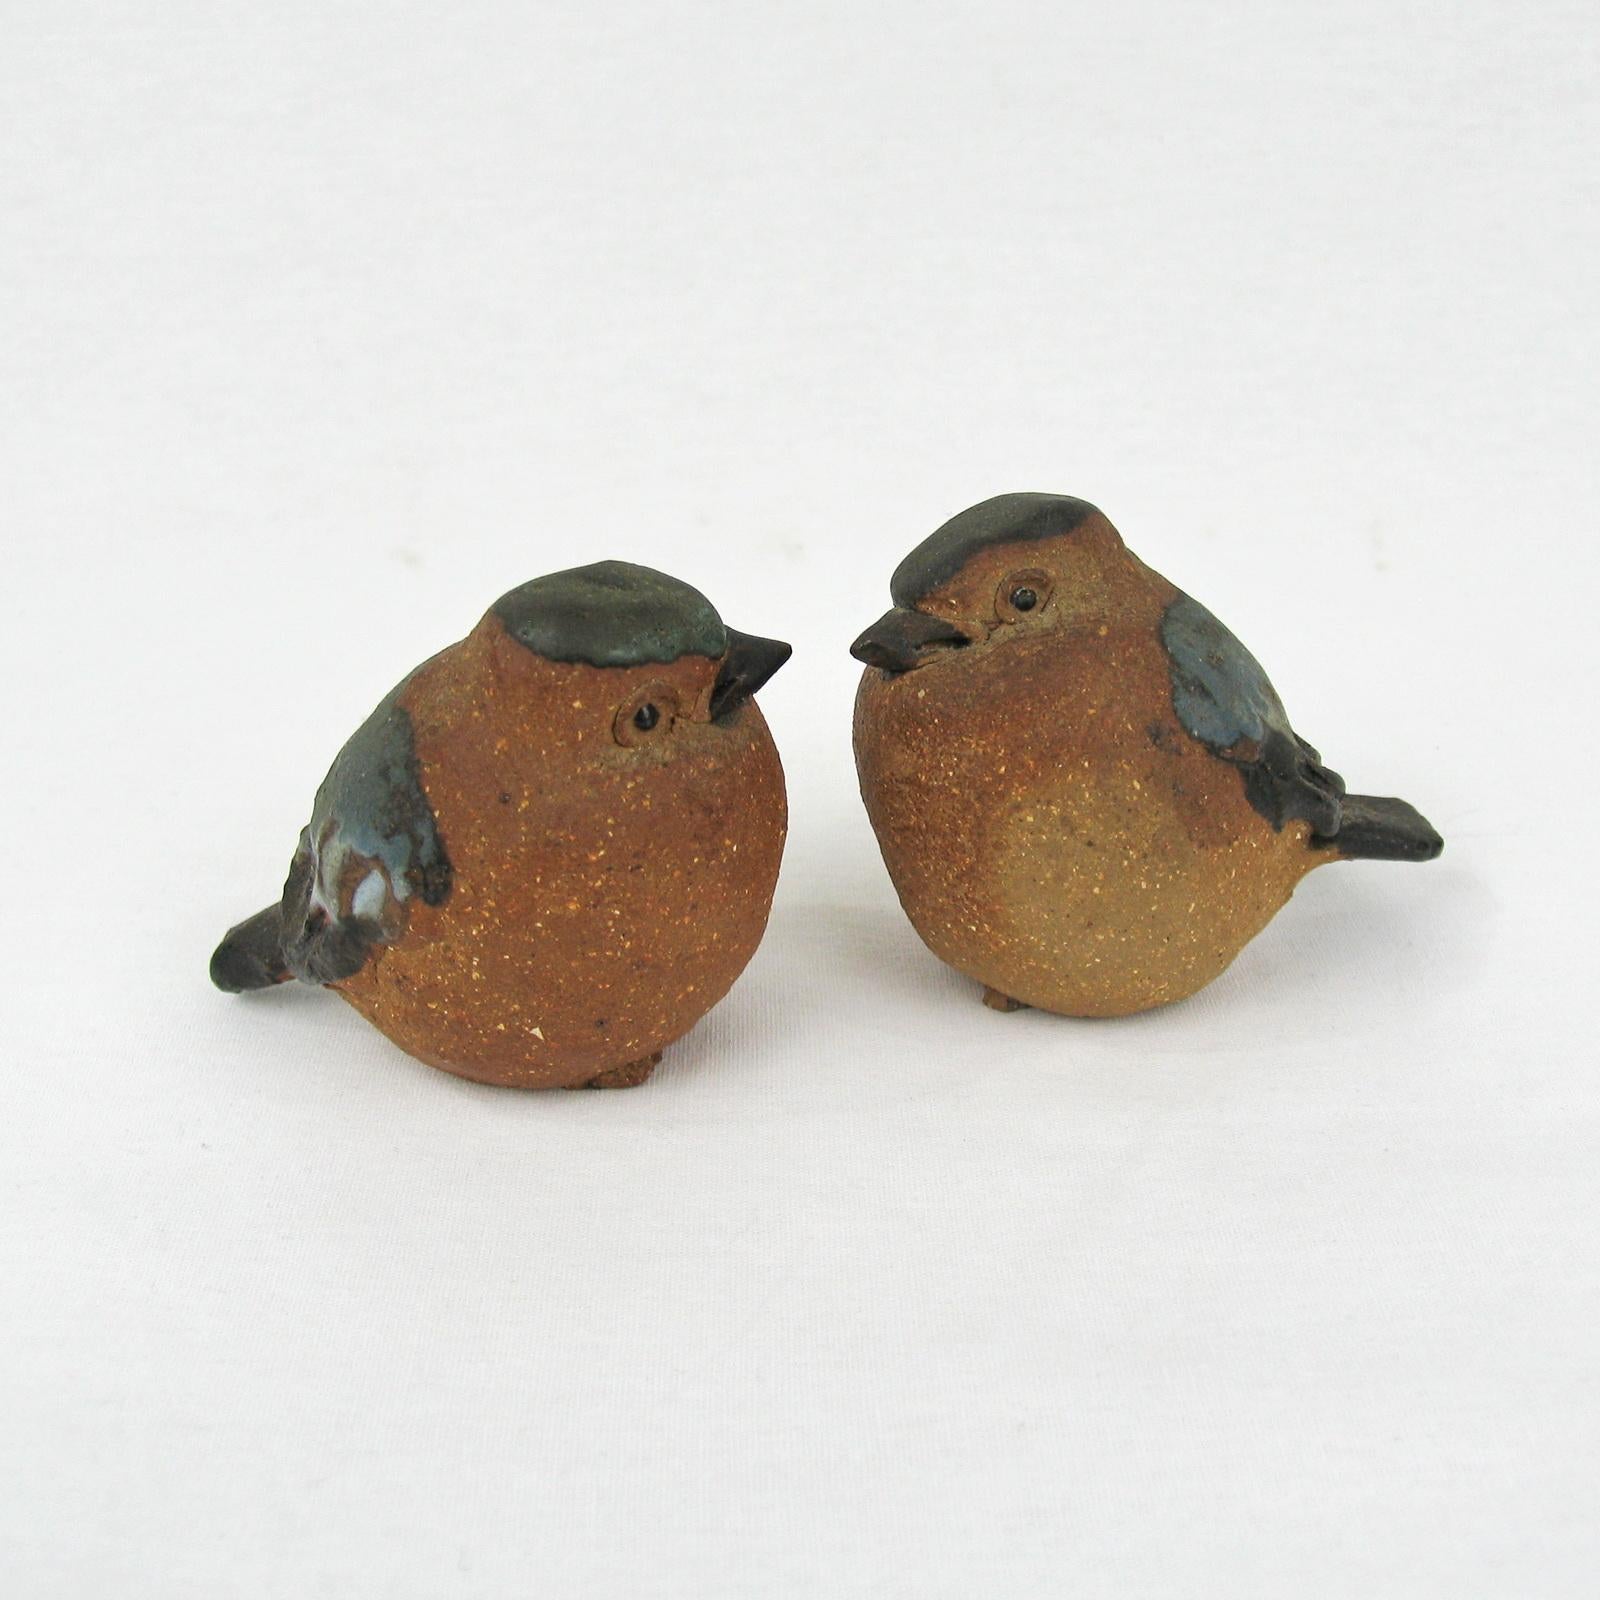 ceramic bird figurines